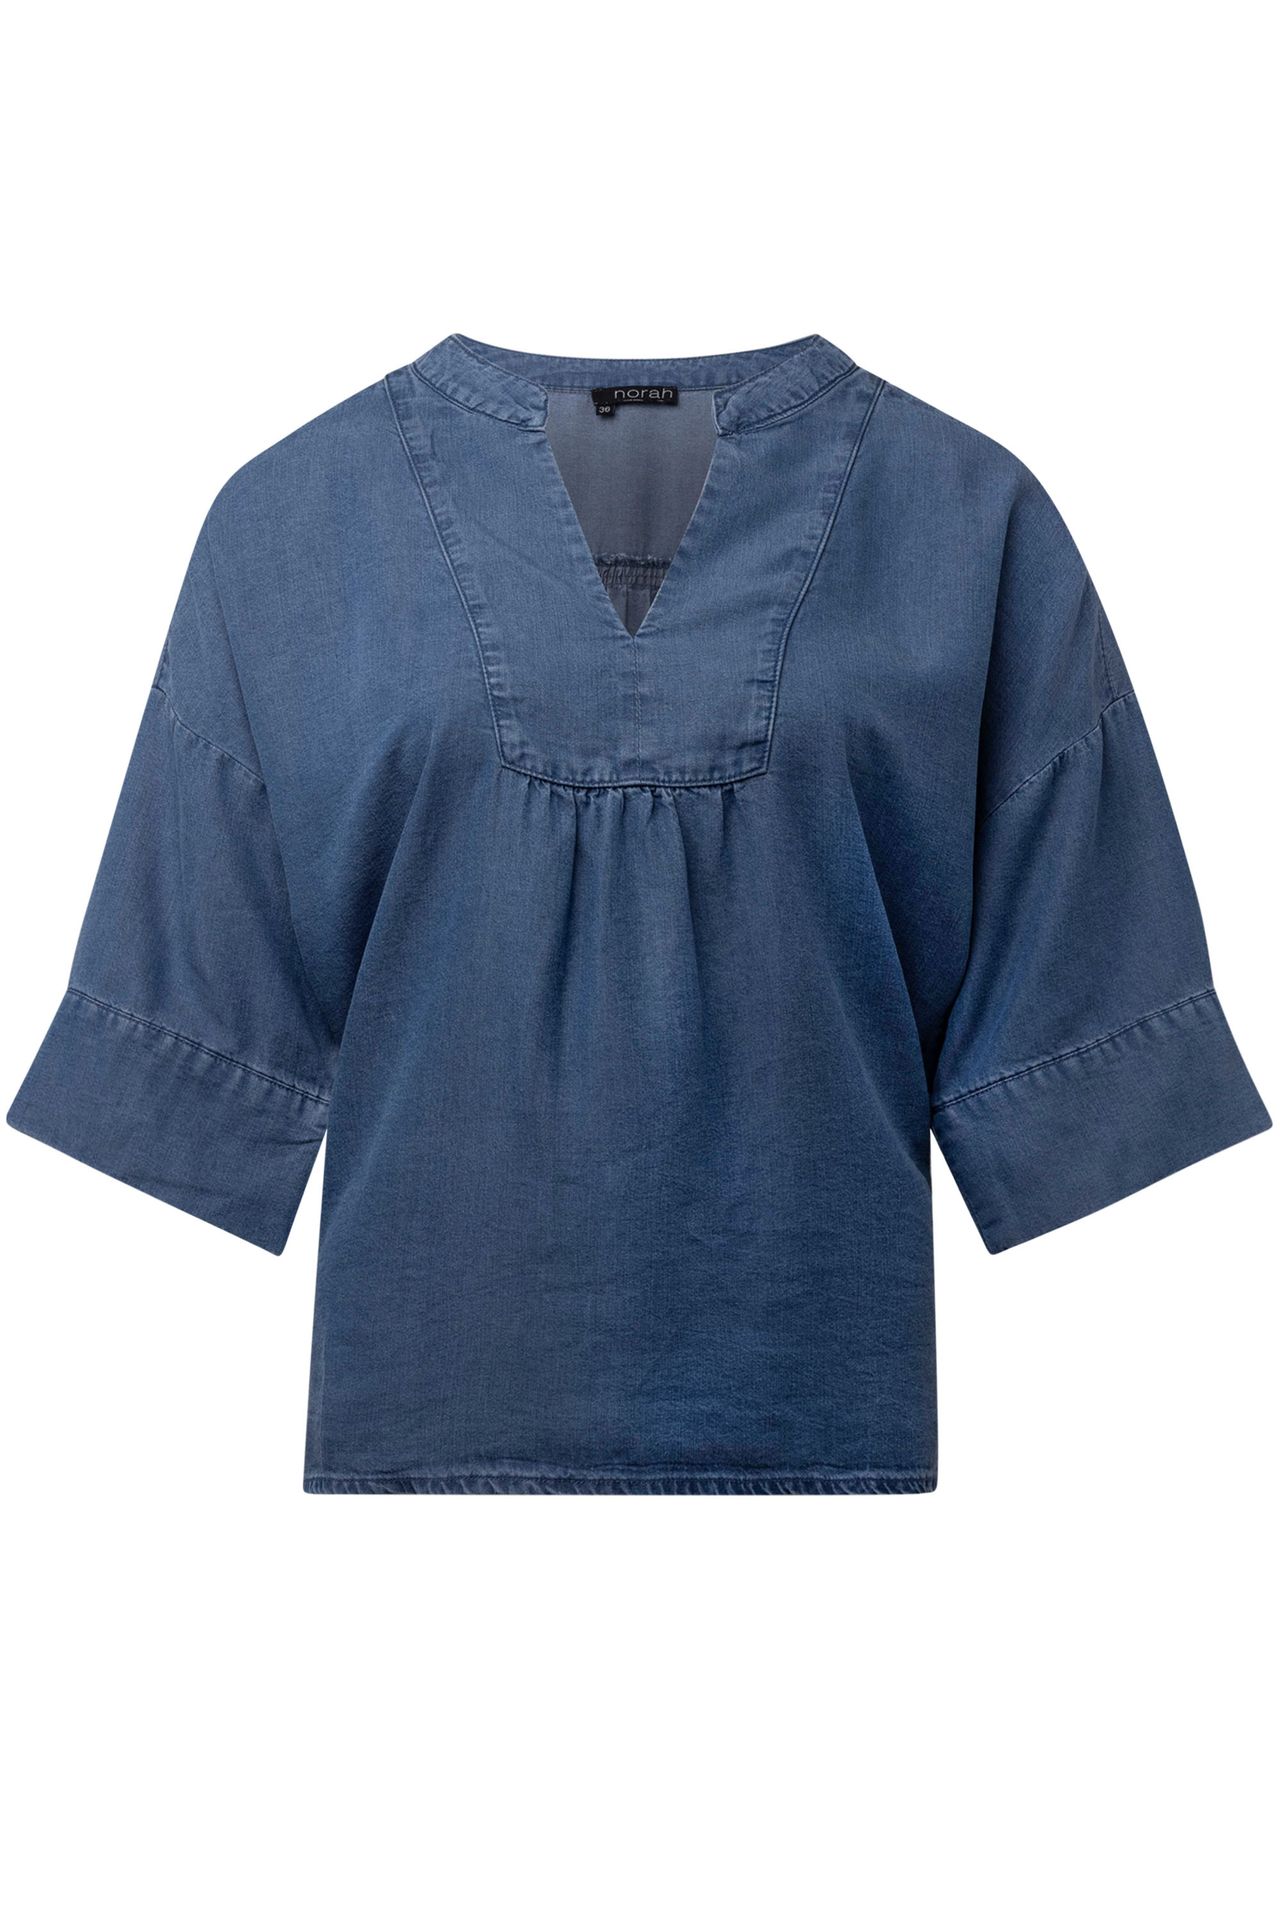  Denim blouse jeans/blue 214592-471-42